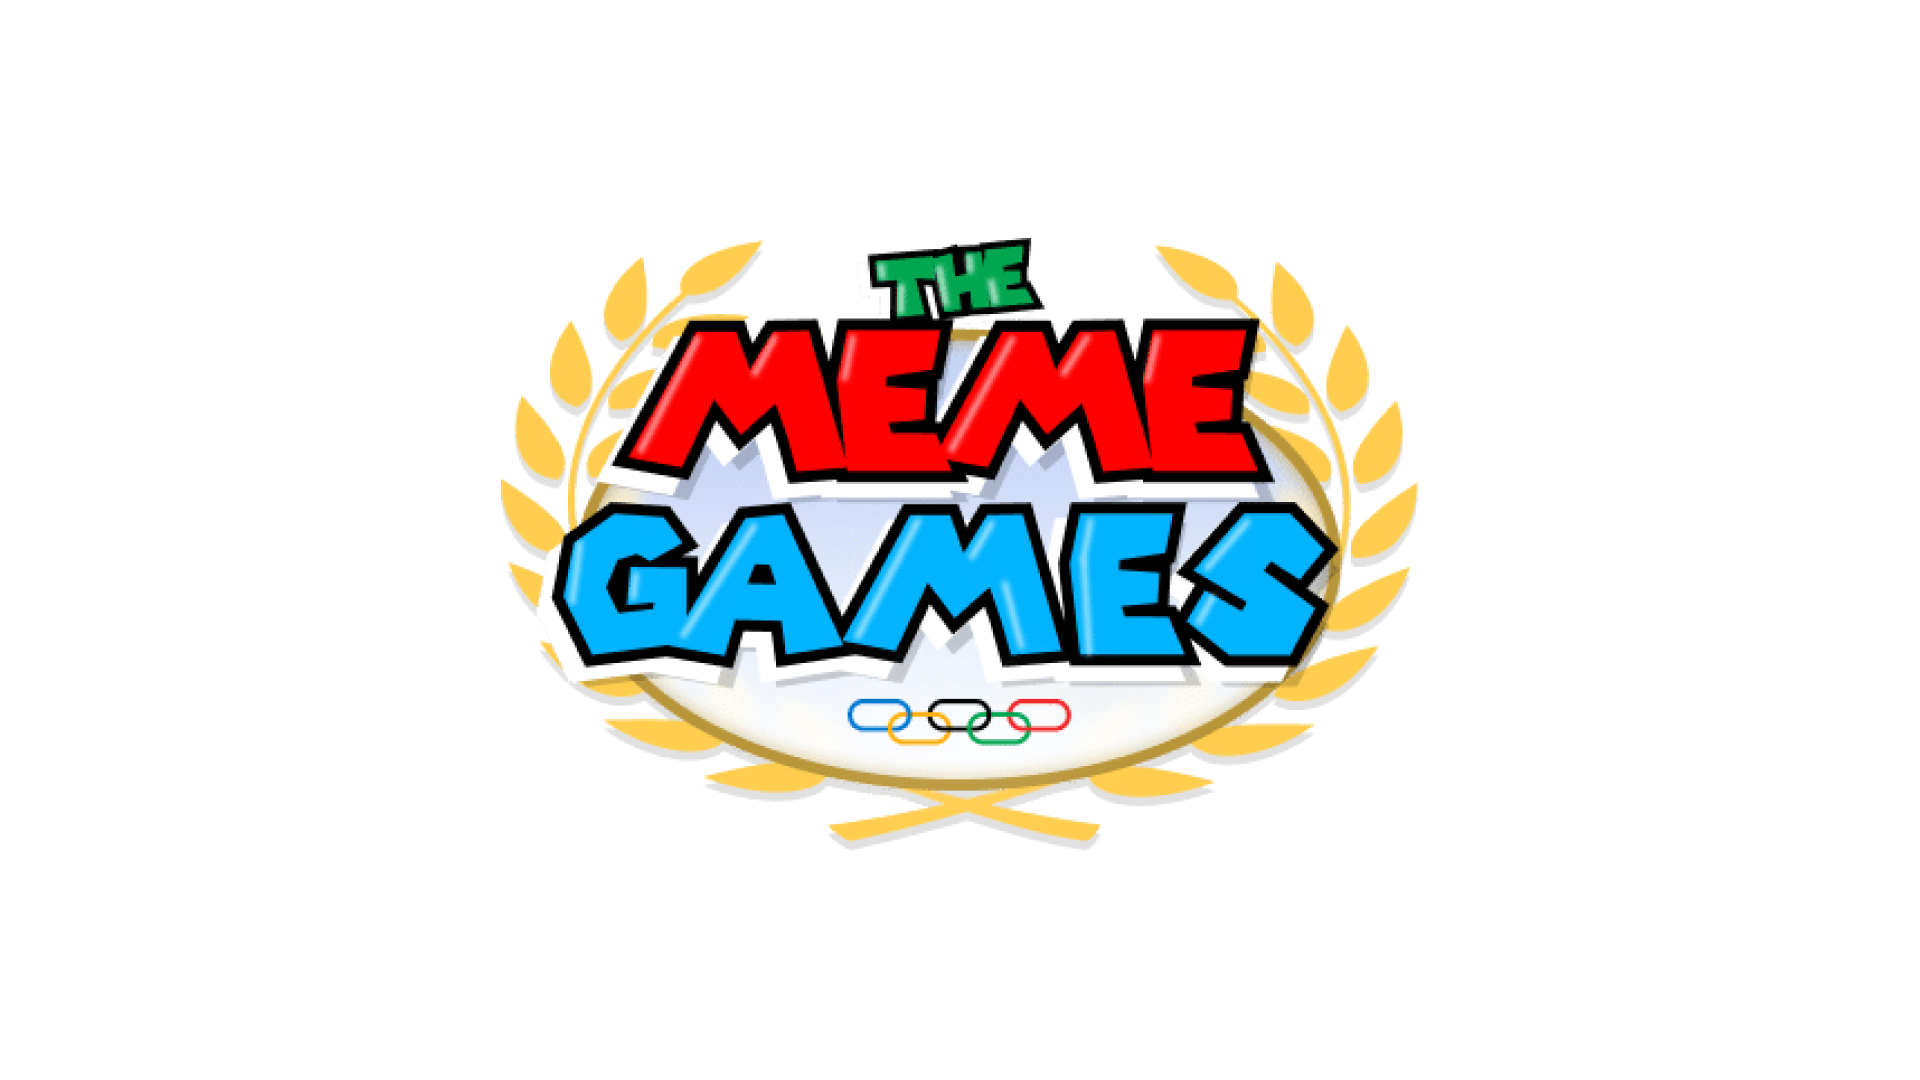 ミームオリンピックを開催するThe Meme Games（$MGMES）、プレセールからわずか数日間で20万ドルの資金調達